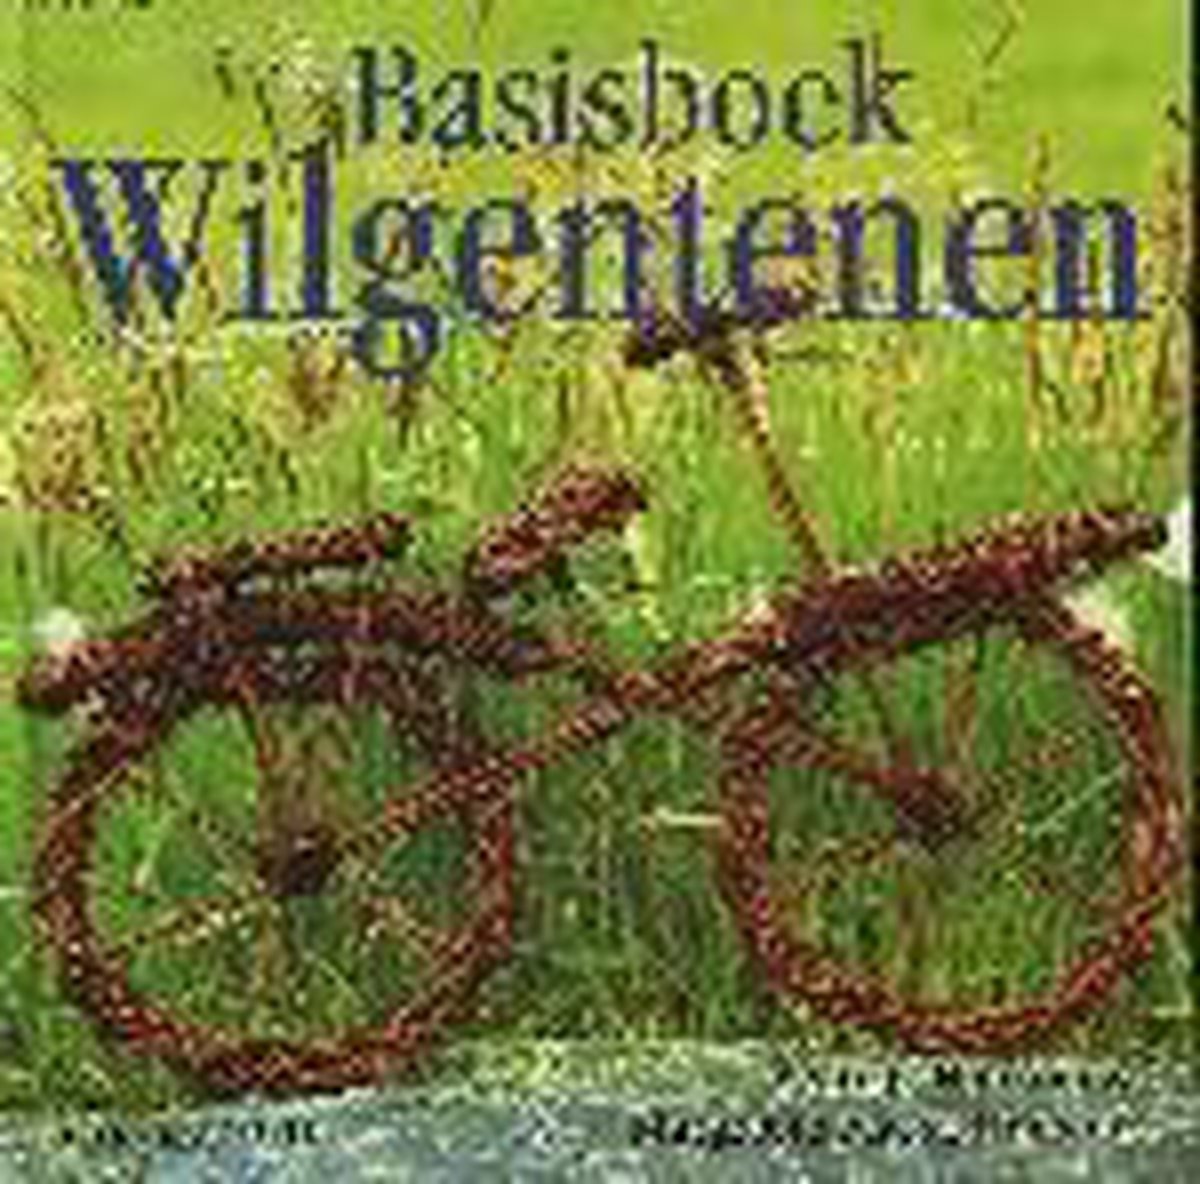 Basisboek Wilgentenen